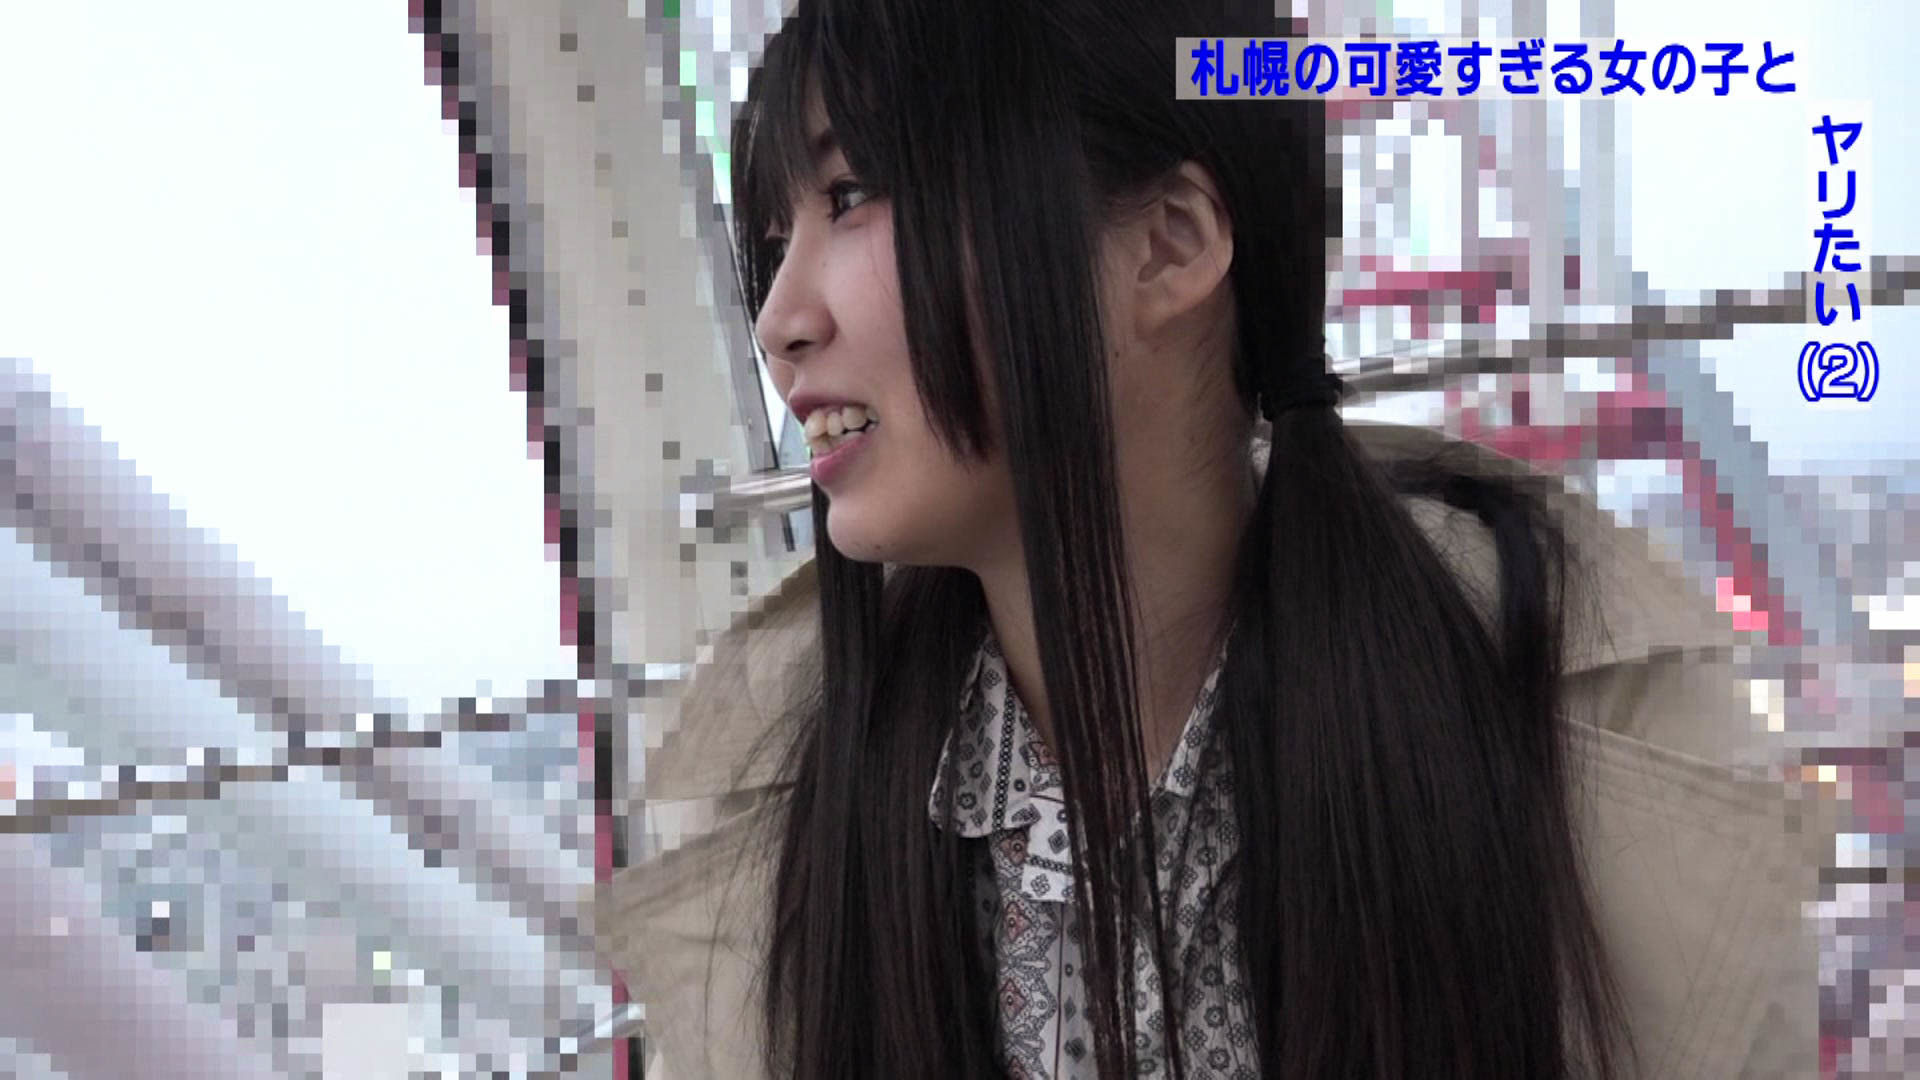 札幌の街で見かけた北海道弁が可愛すぎる女の子とどうしてもヤリたい（2） 画像3